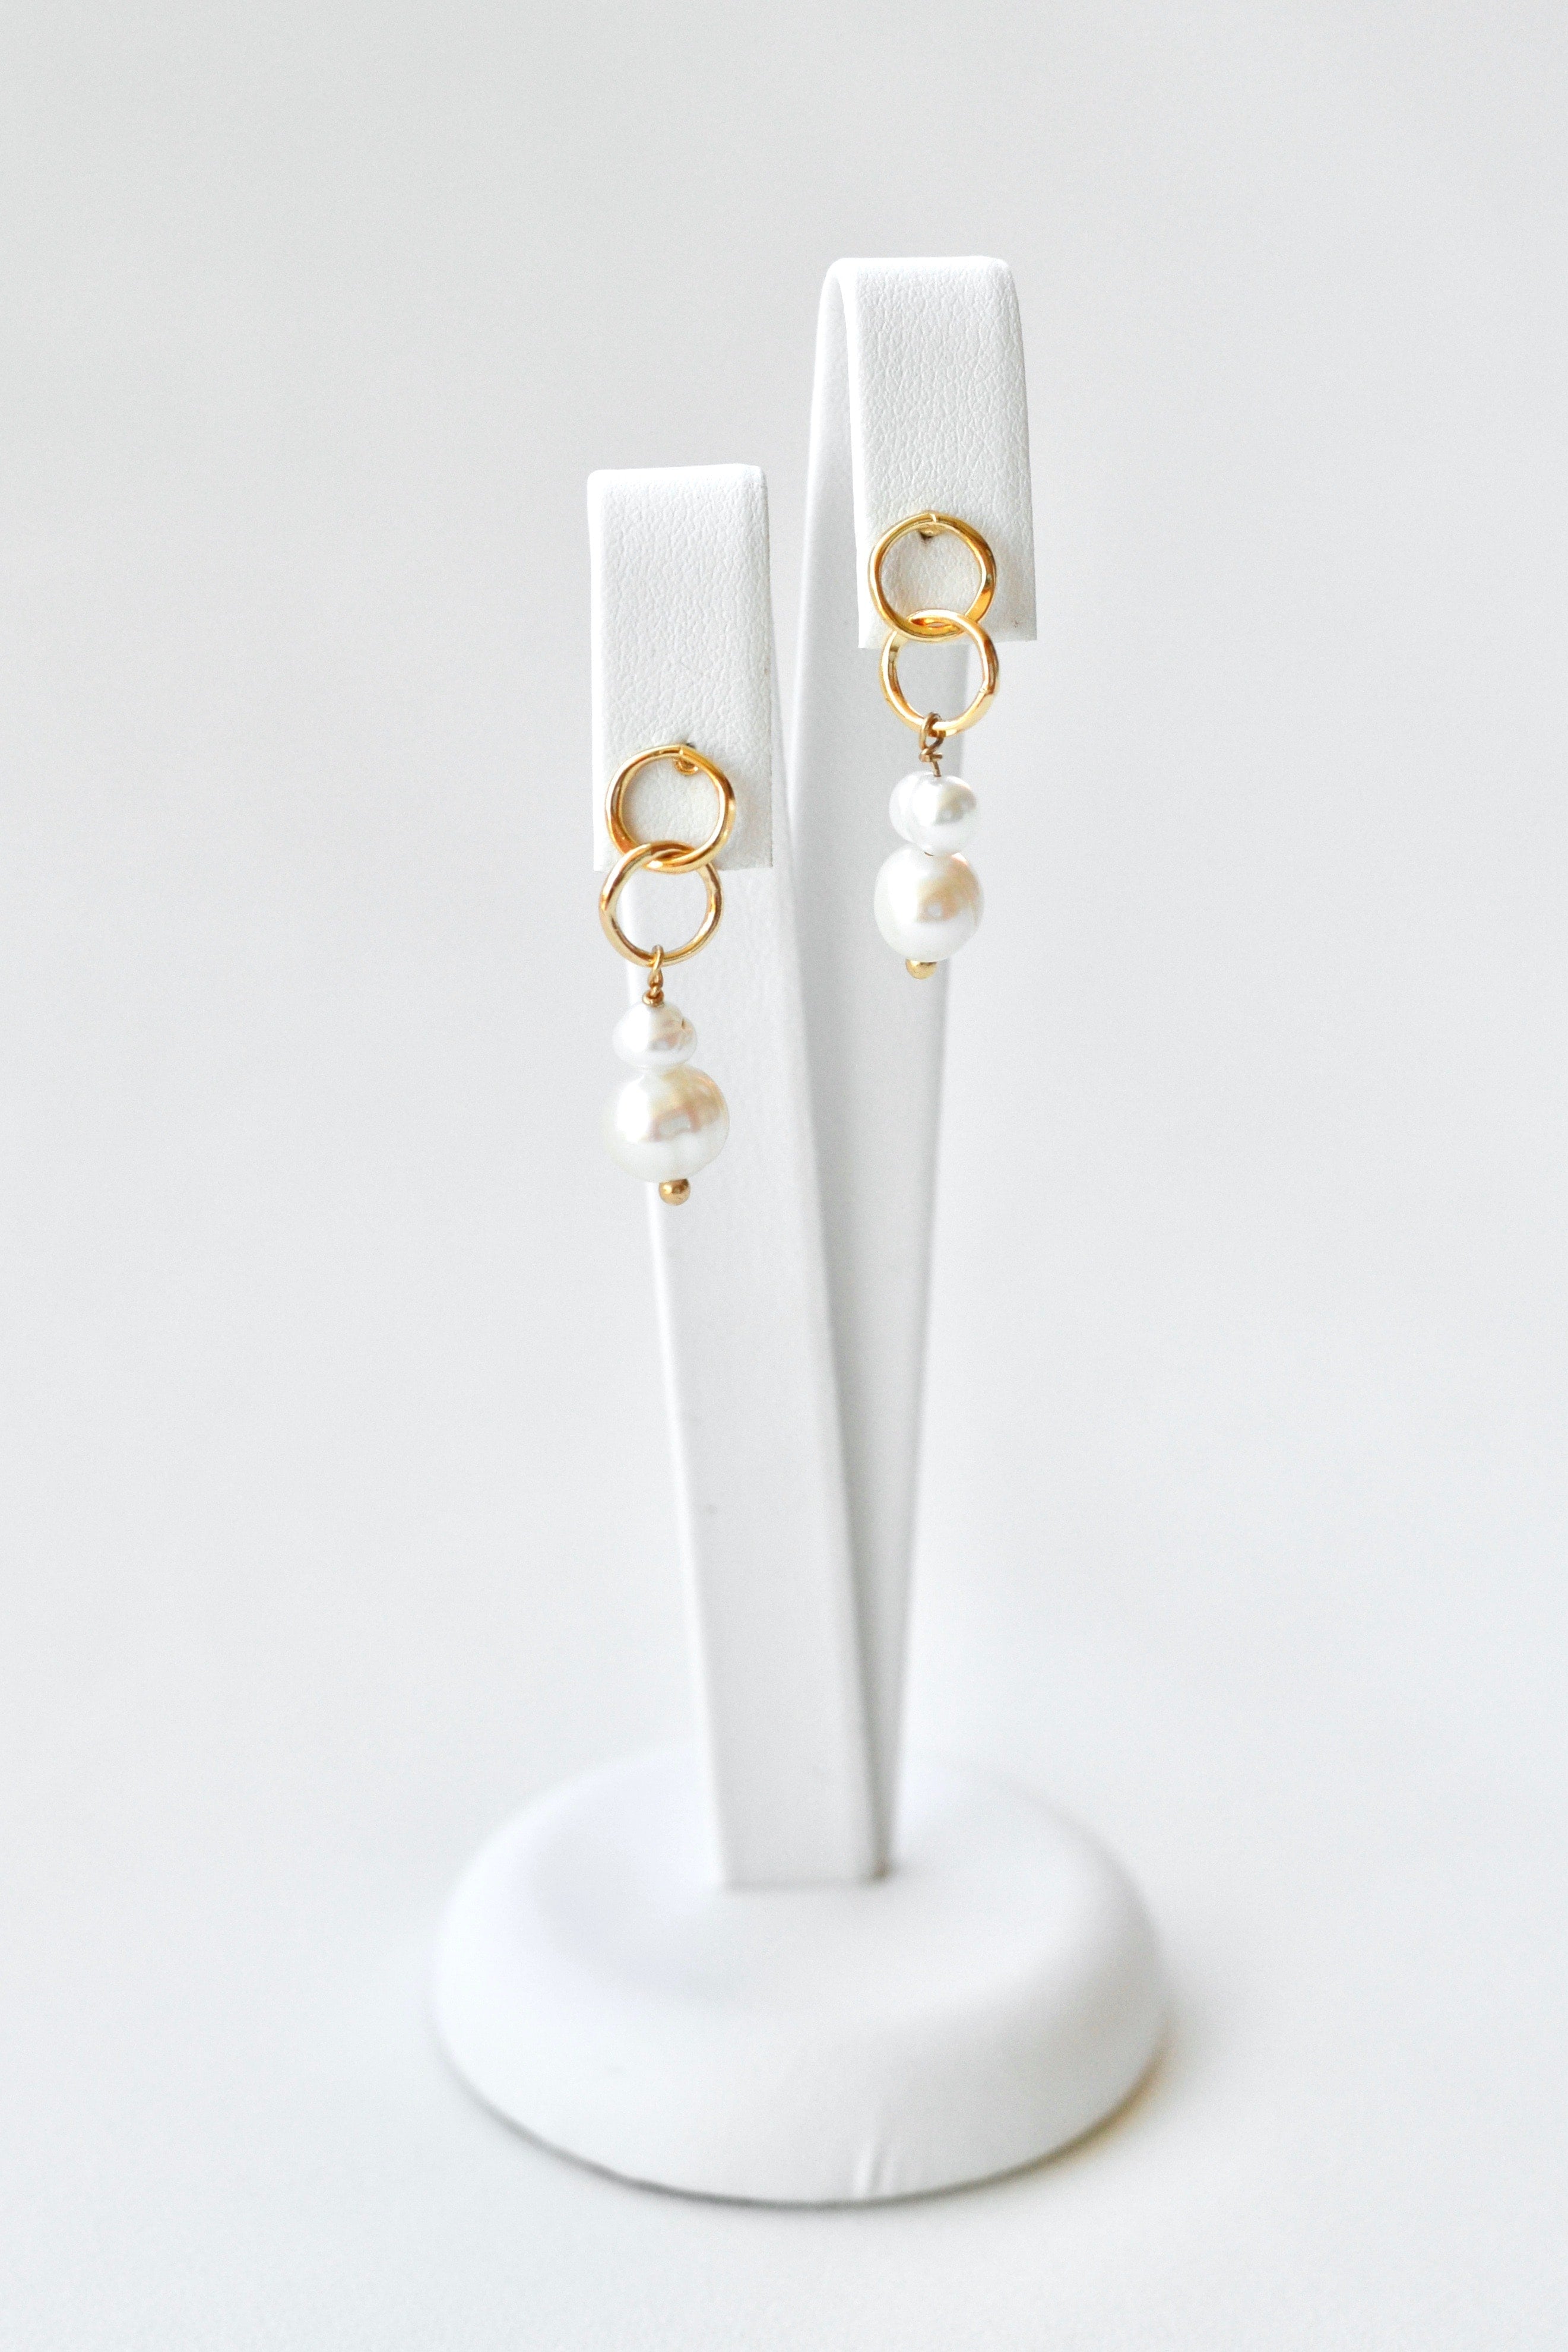 Boucles d'oreilles pendantes à double anneau doré et doubles perles naturelles blanches